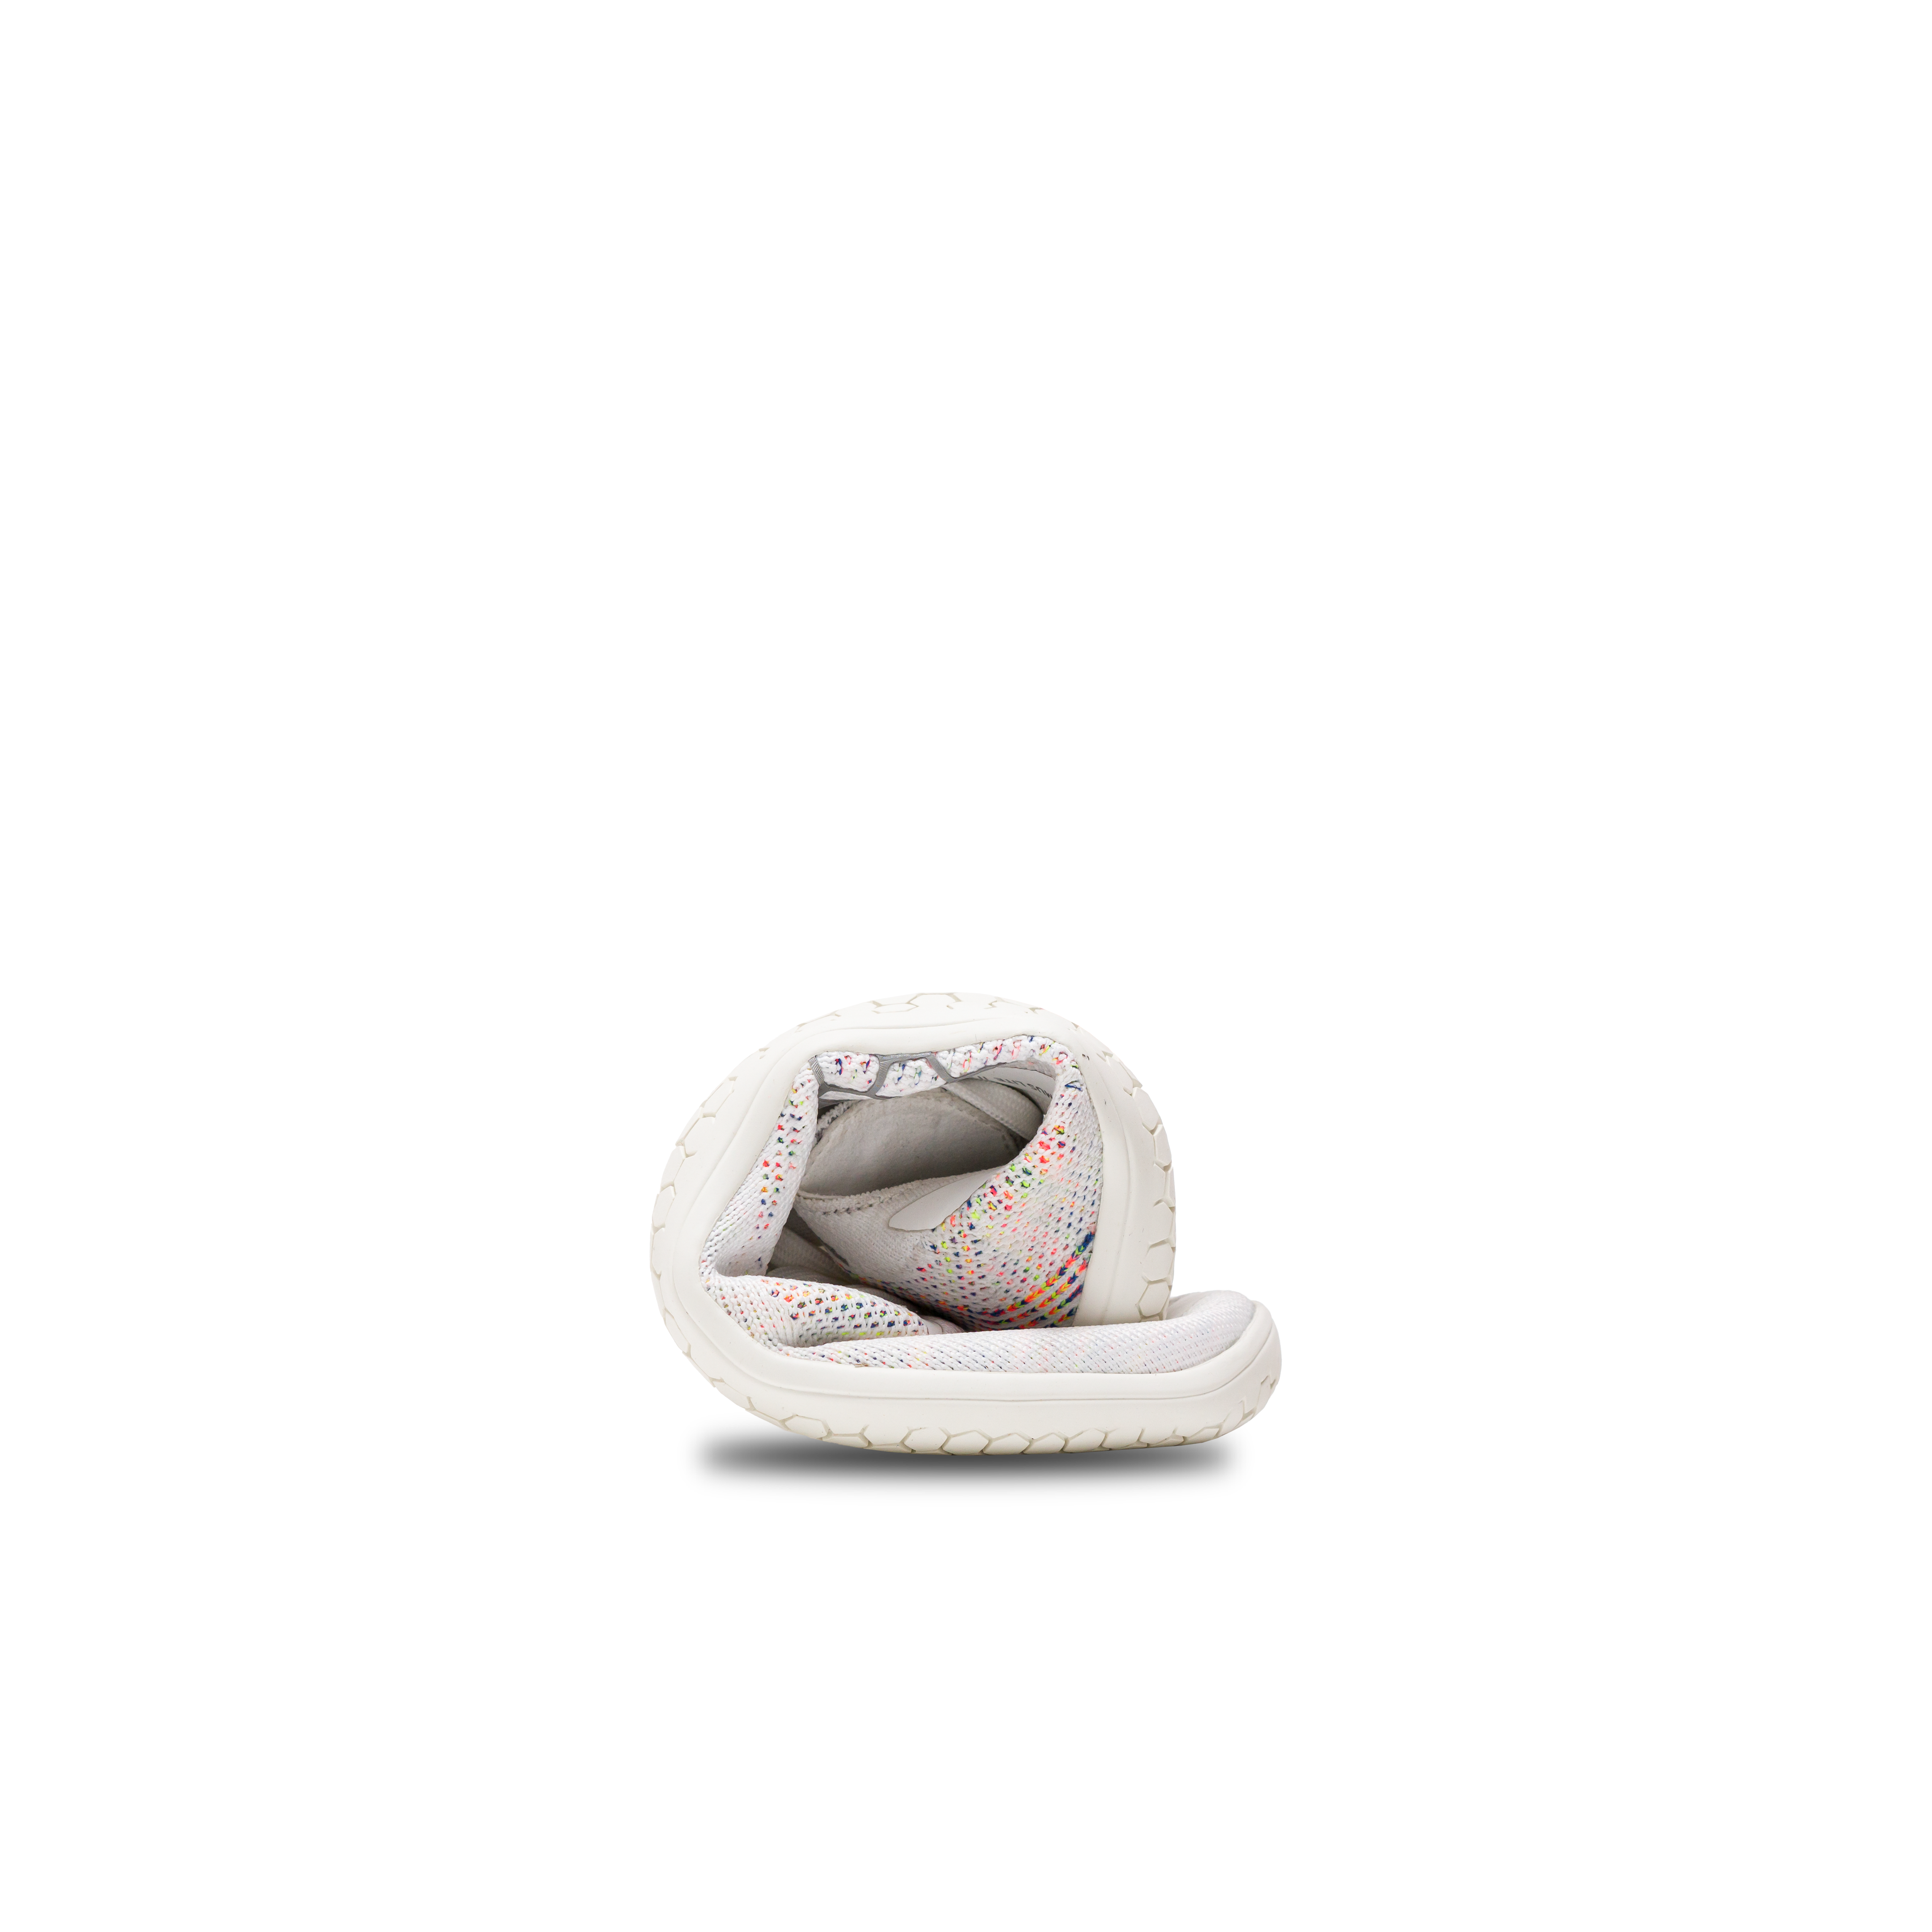 Primus Lite Knit damesko fra Vivobarefoot i varianten Bright White Iridescent, rullet sammen for at vise fleksibilitet og barfodsfornemmelse, letvægtsdesign med genbrugsmaterialer.